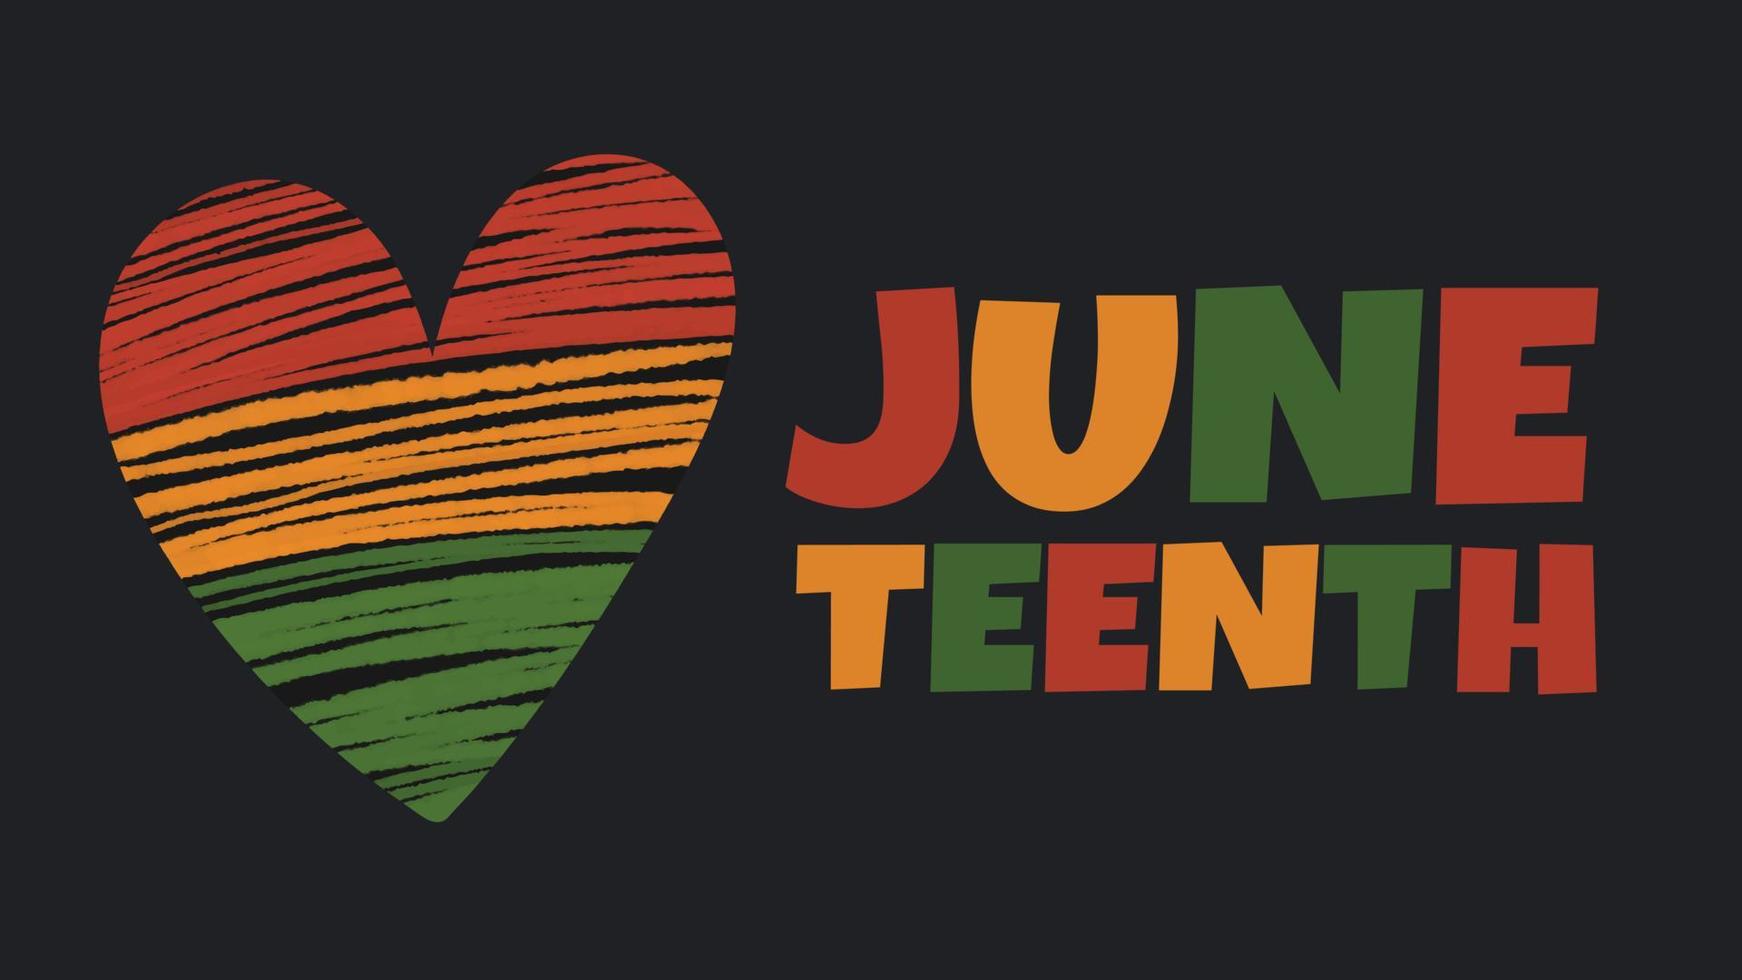 vector banner juneteenth - celebração do fim da escravidão nos eua, dia da liberdade de emancipação afro-americana. coração em cores africanas - vermelho, verde, amarelo sobre fundo preto